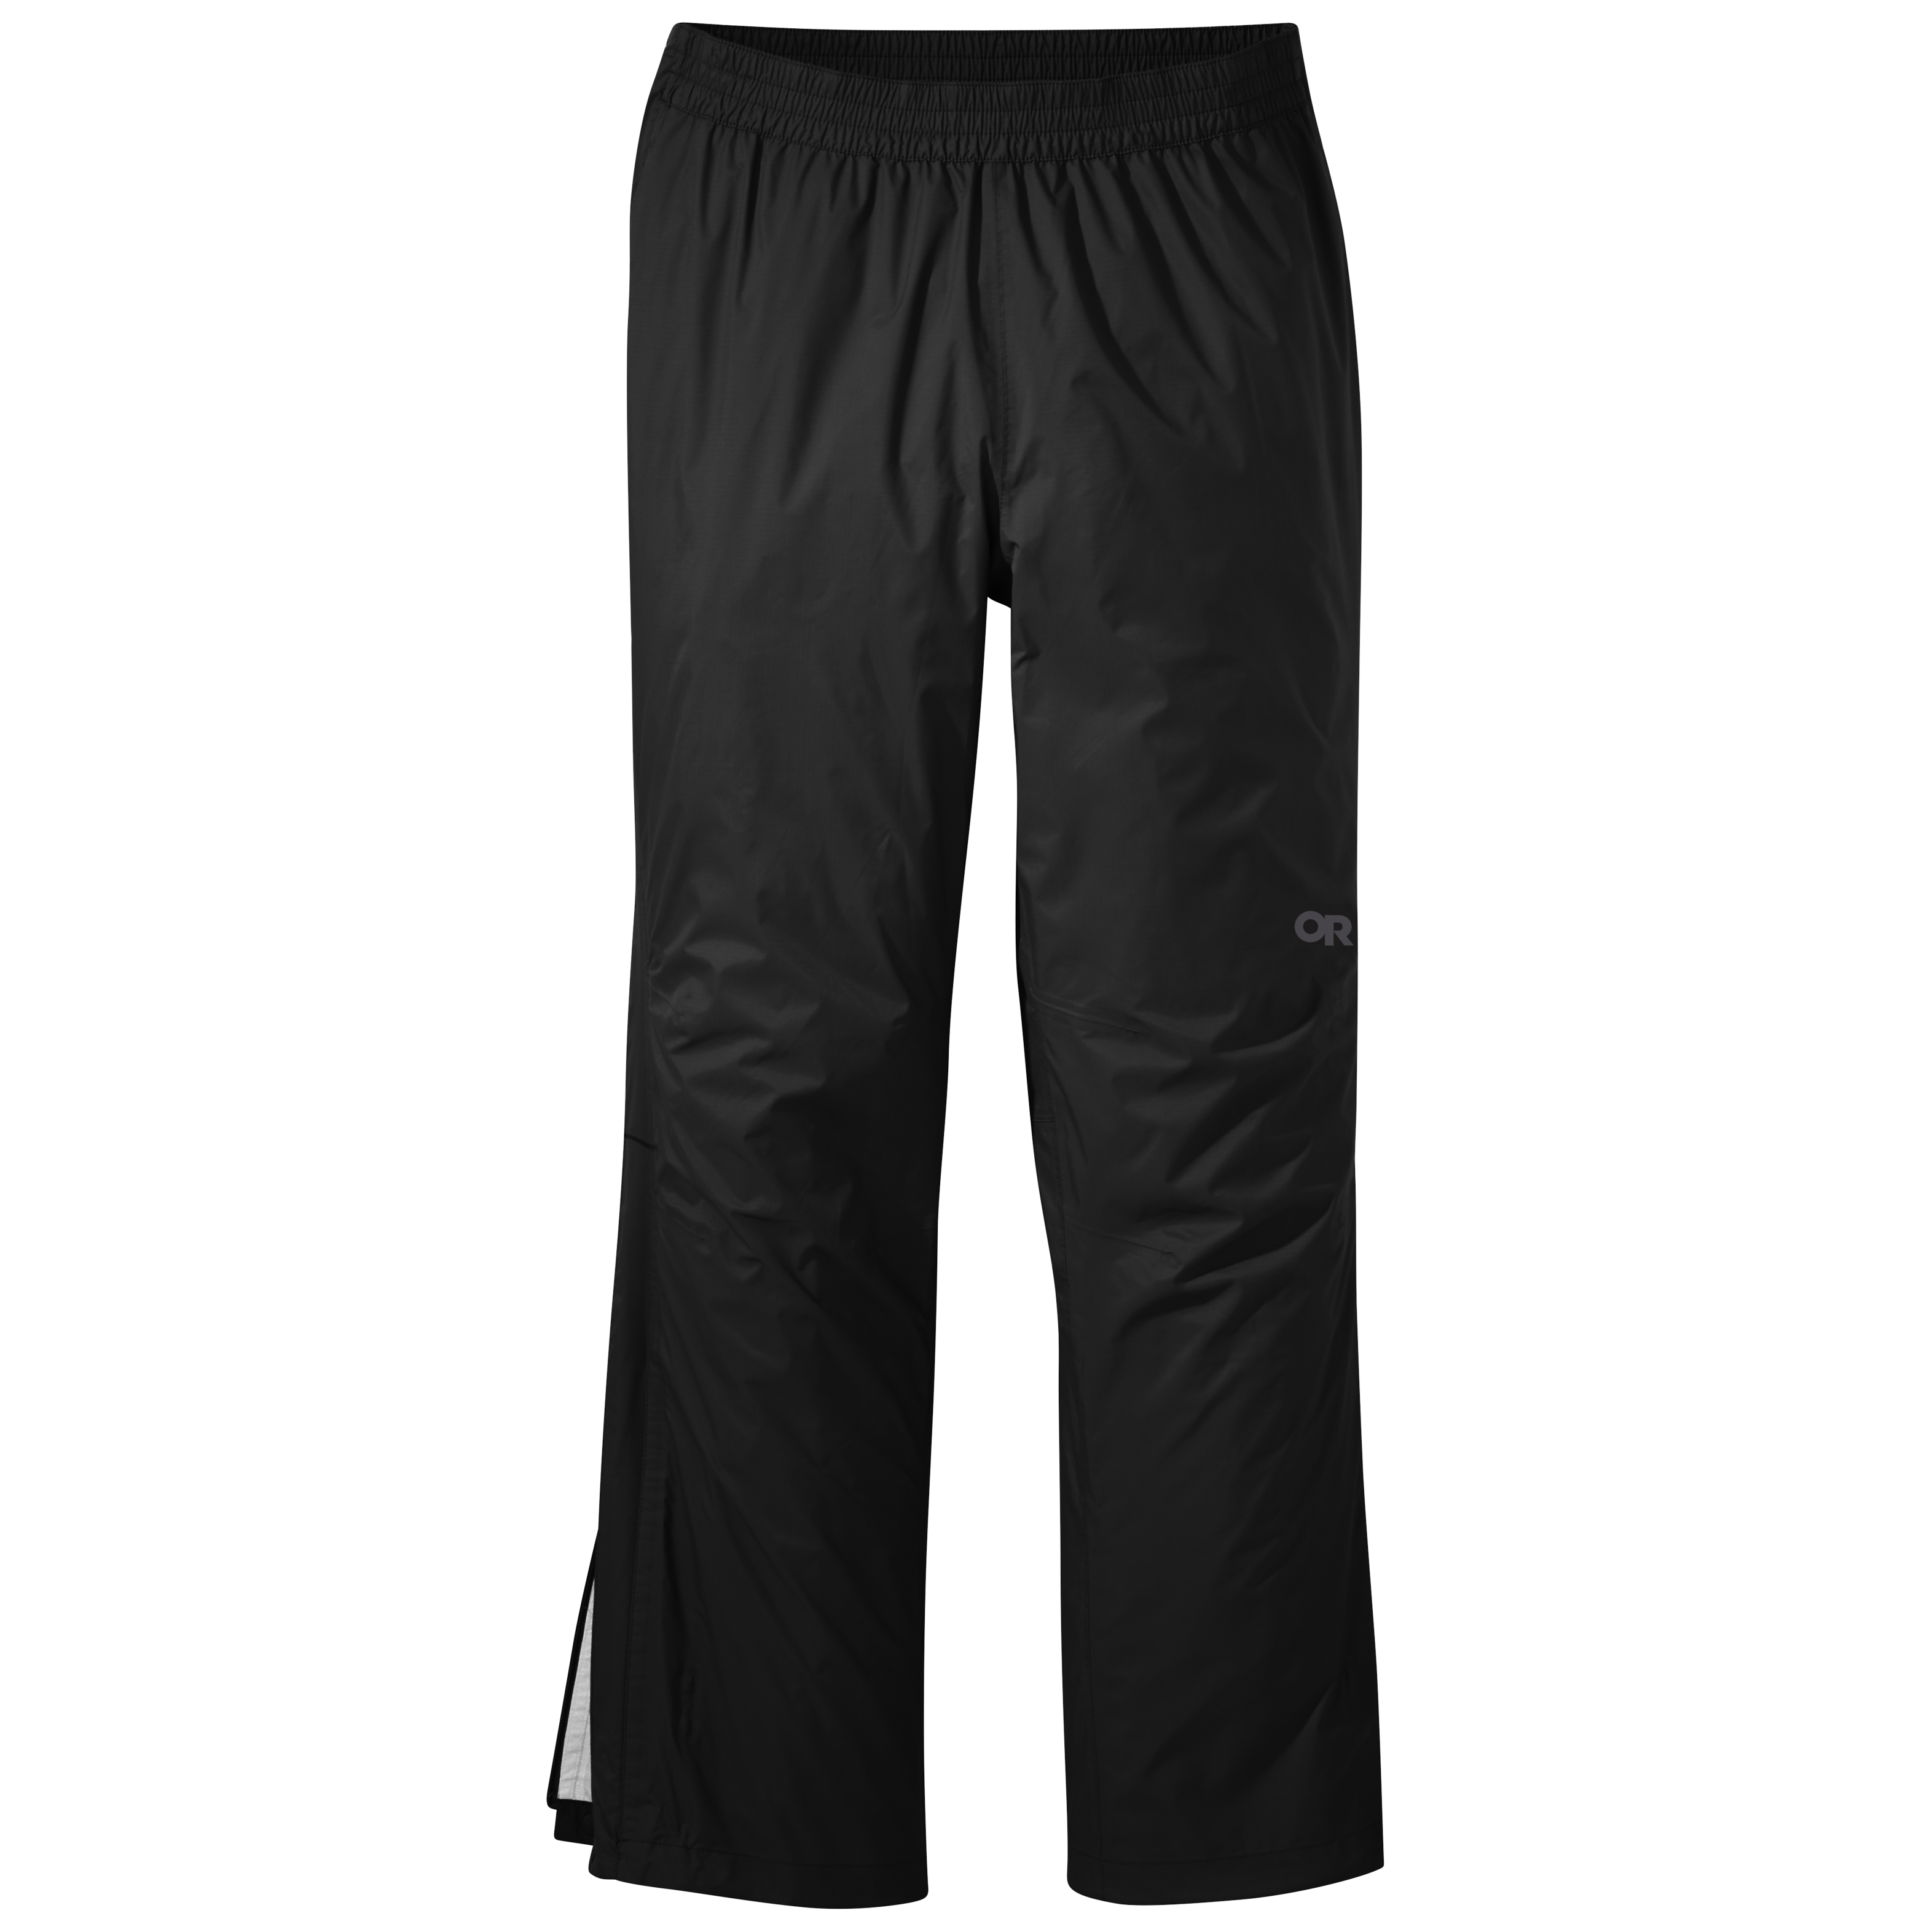 Outdoor Ventures Men's Rain Pants Waterproof Rain Overall Pants